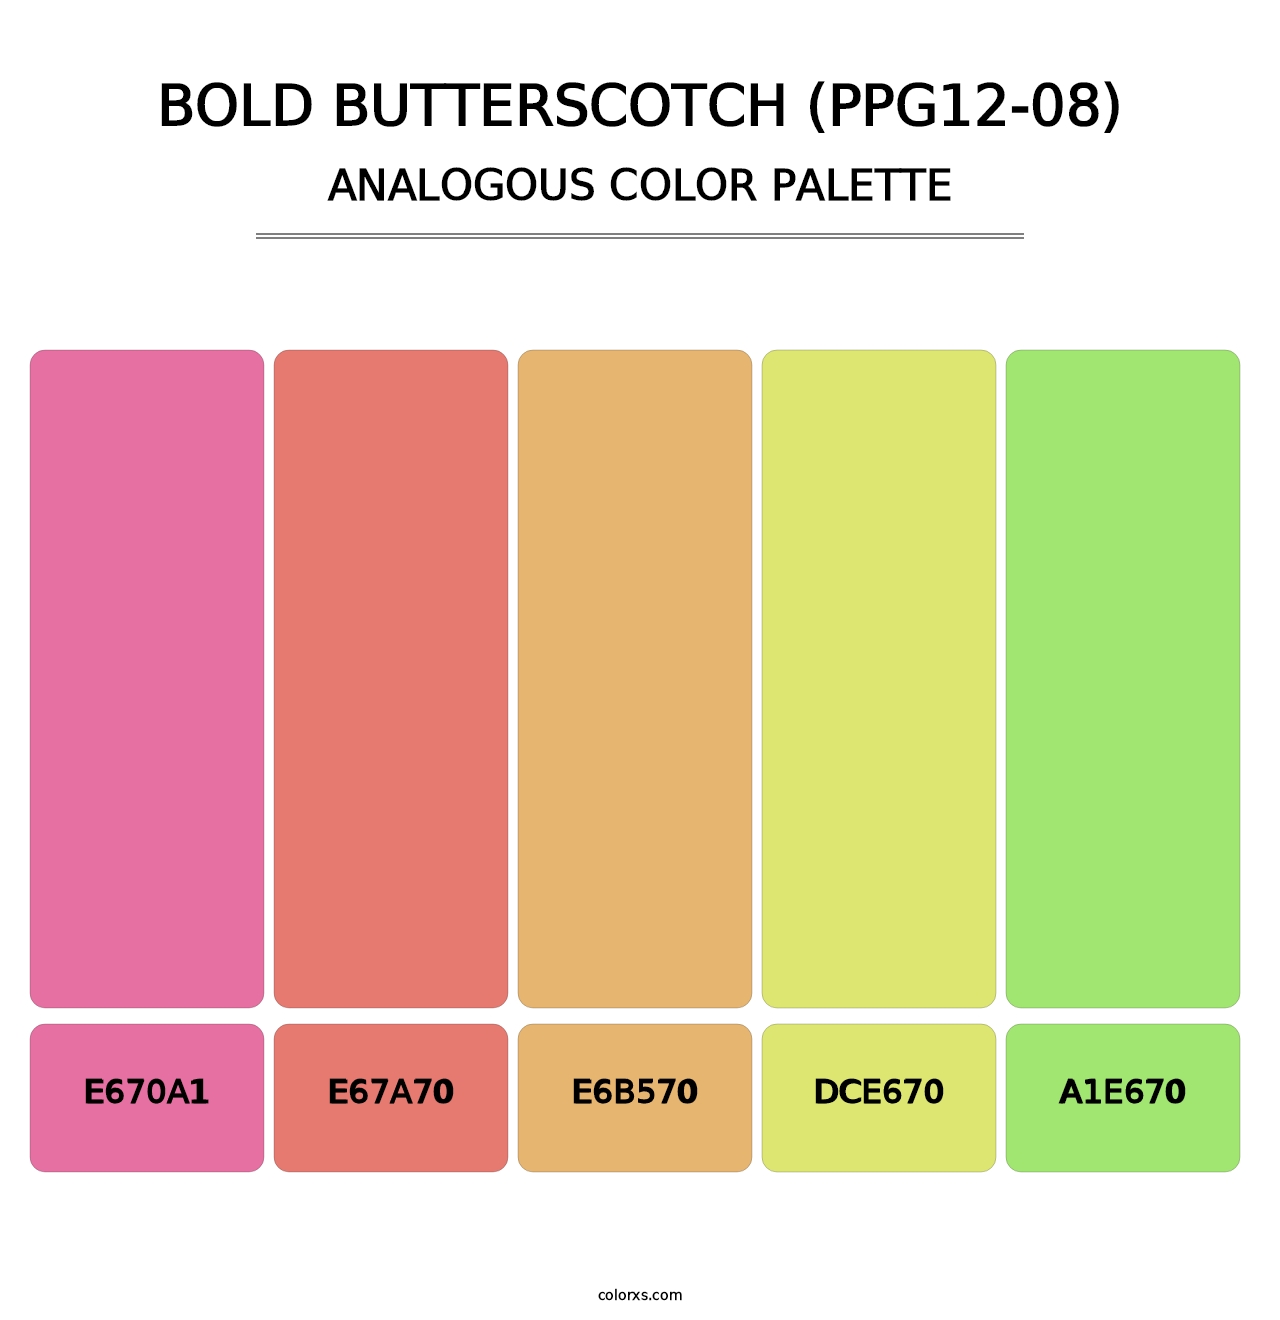 Bold Butterscotch (PPG12-08) - Analogous Color Palette